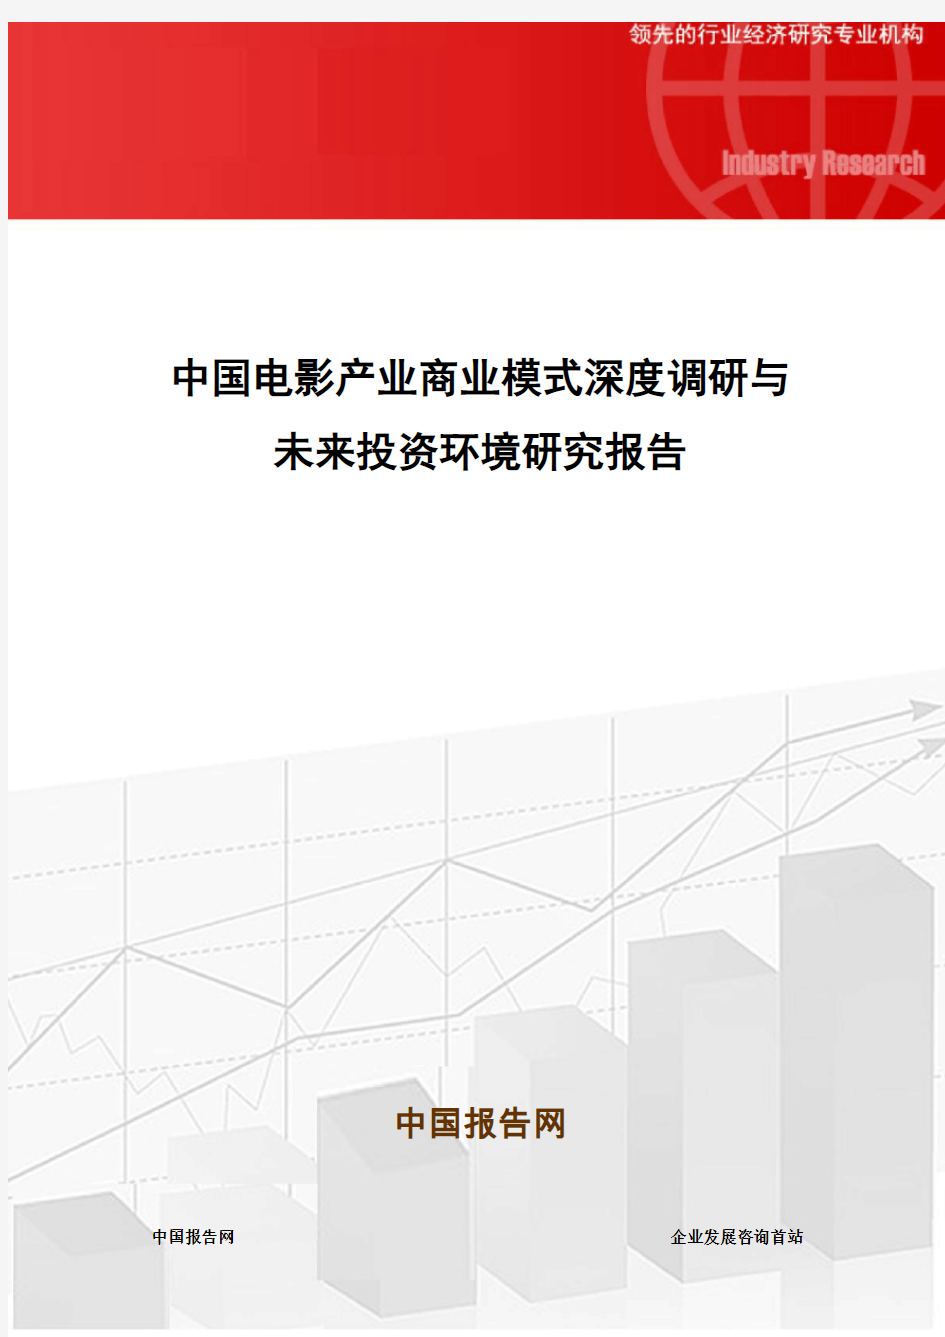 中国电影产业商业模式深度调研与未来投资环境研究报告